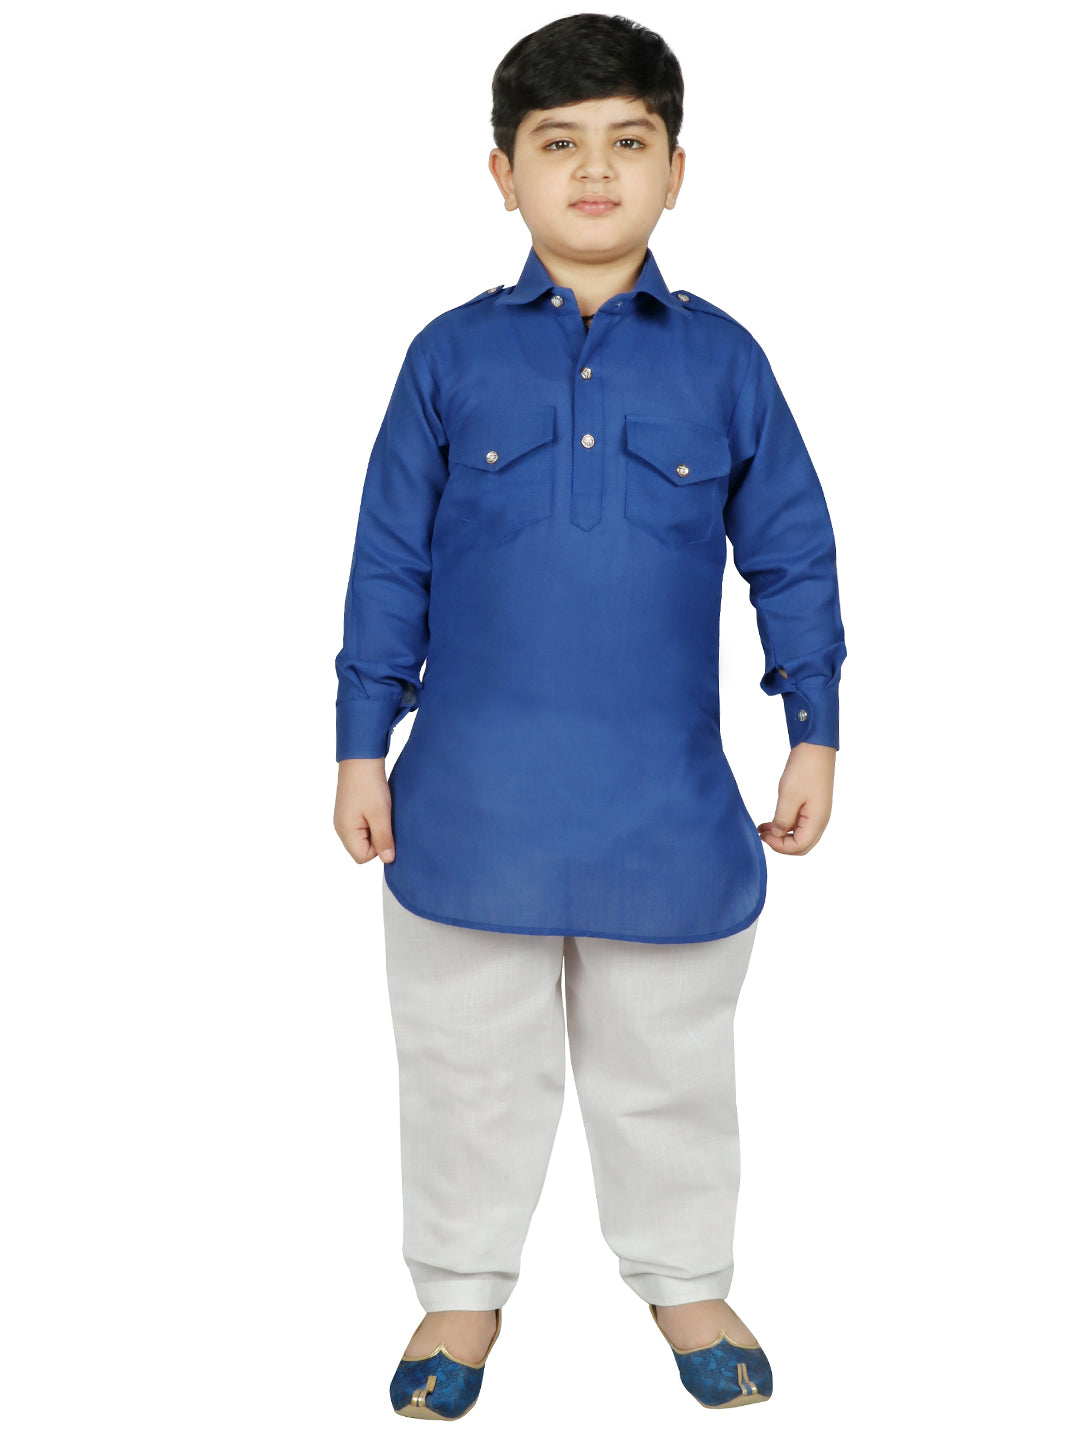 SG YUVRAJ Pathani Suits For Boys (YP-113)